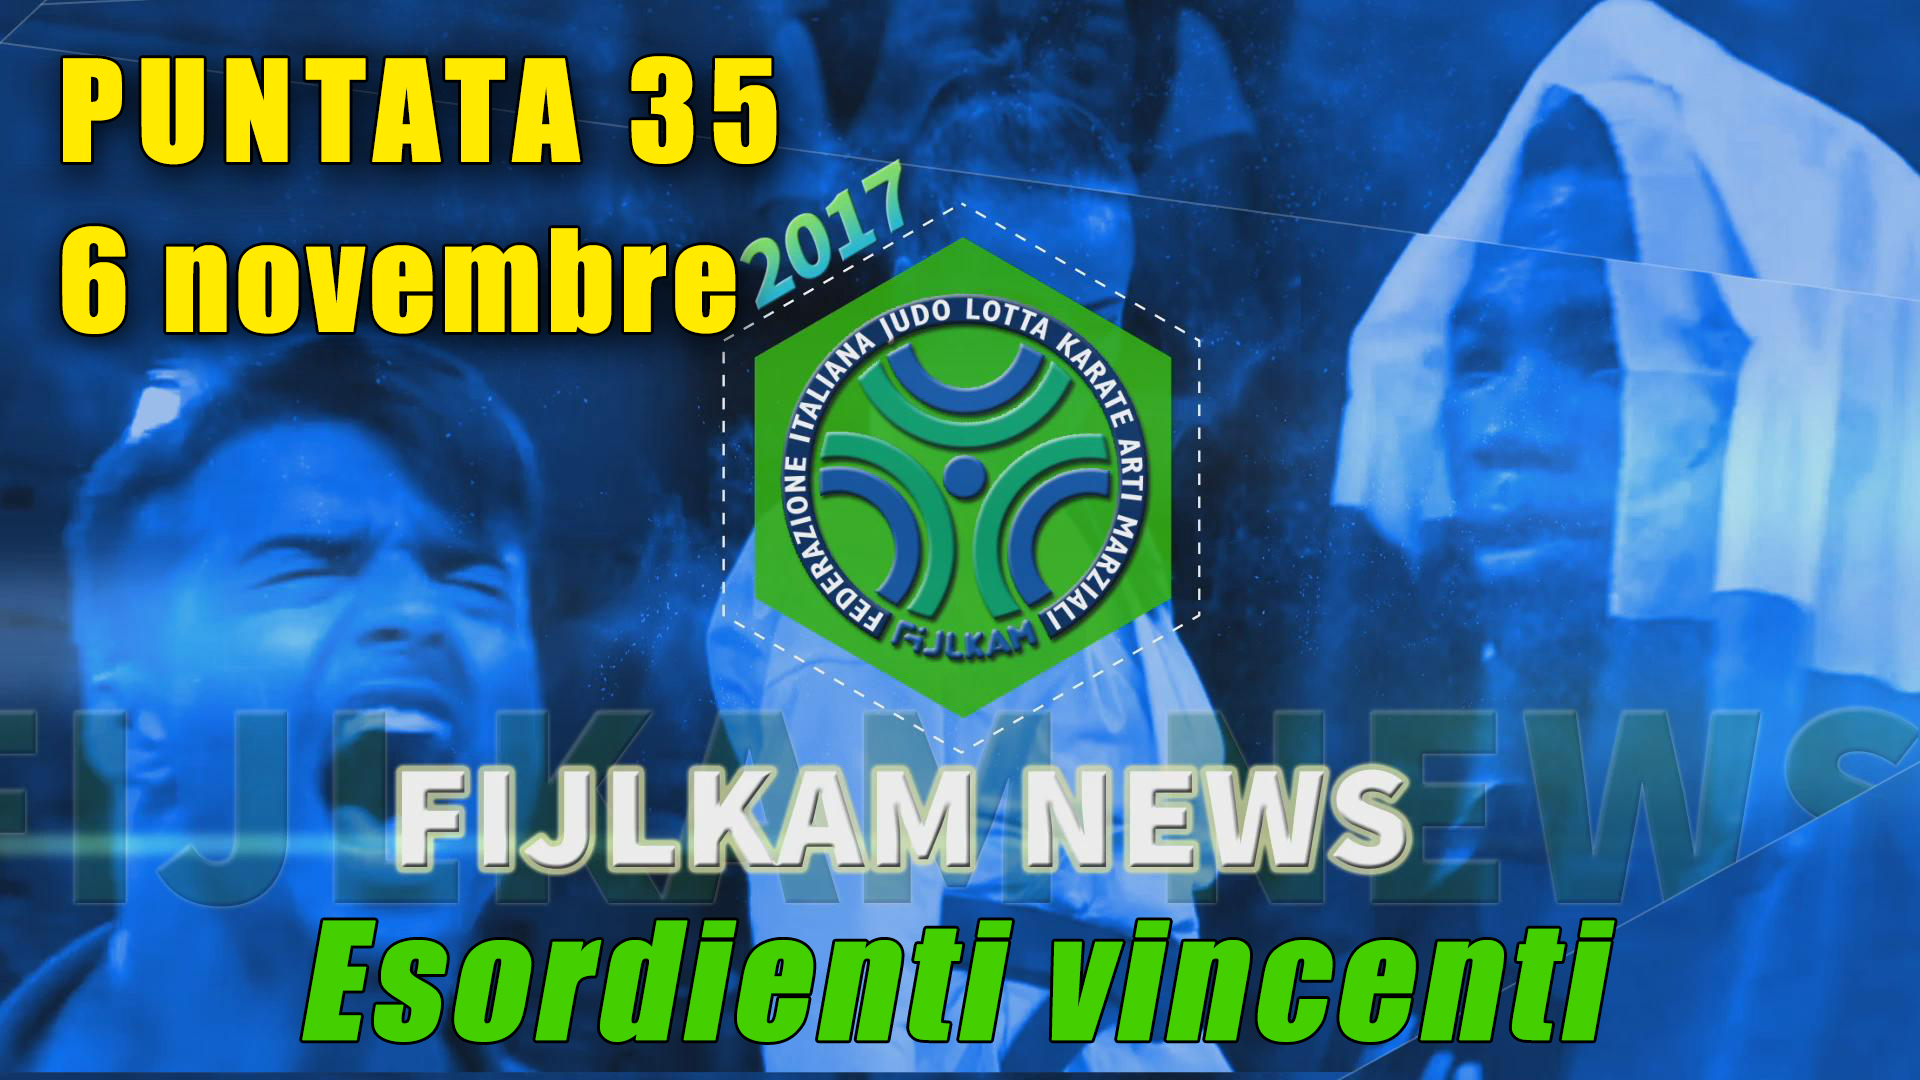 FIJLKAM News 35 - Esordienti Vincenti